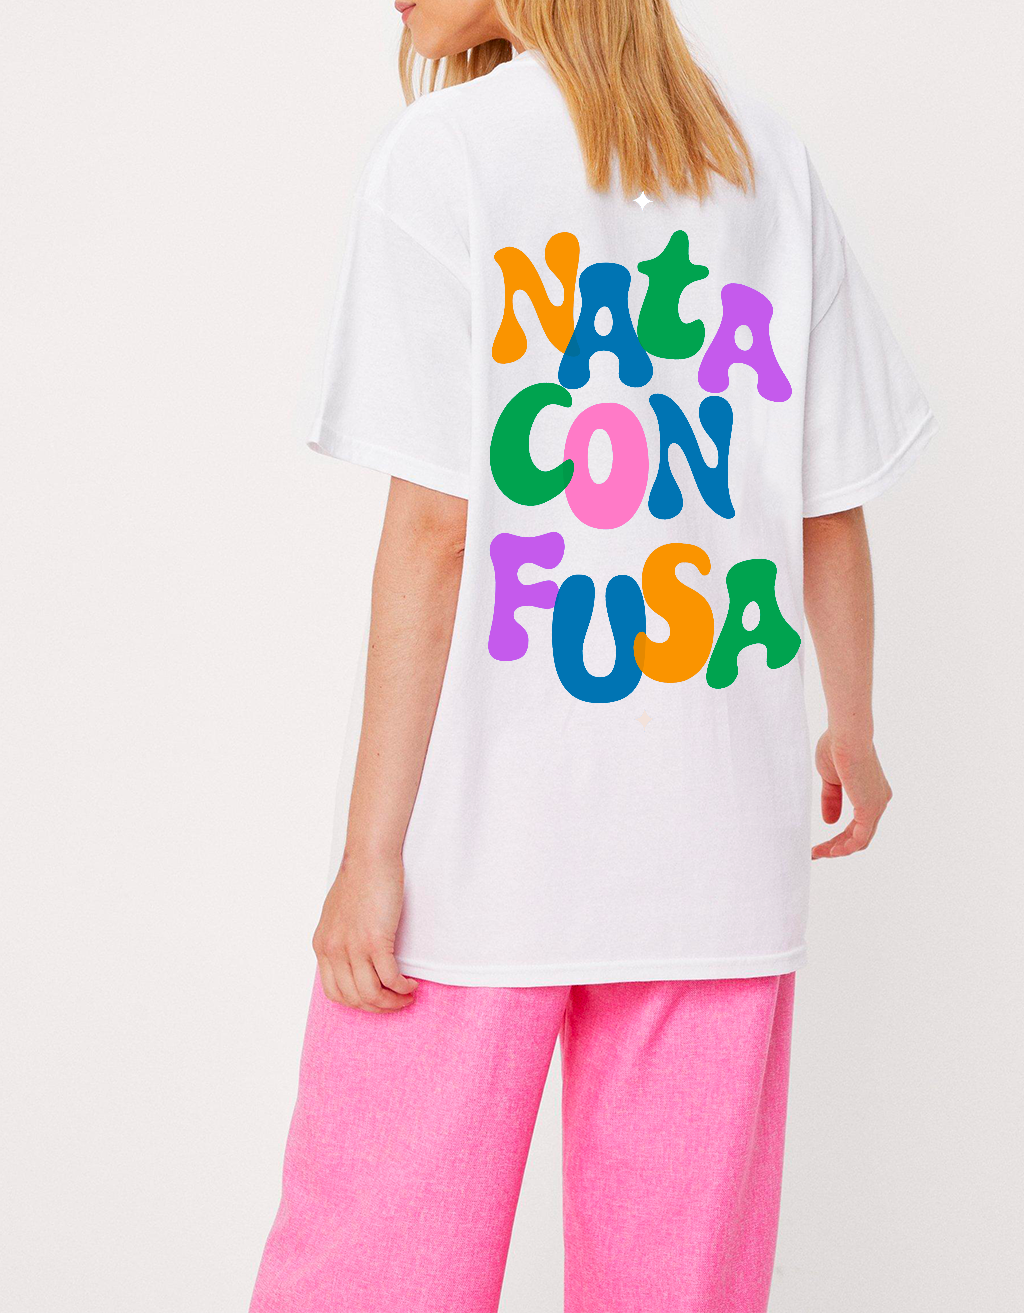 T-Shirt  "Nata confusa"